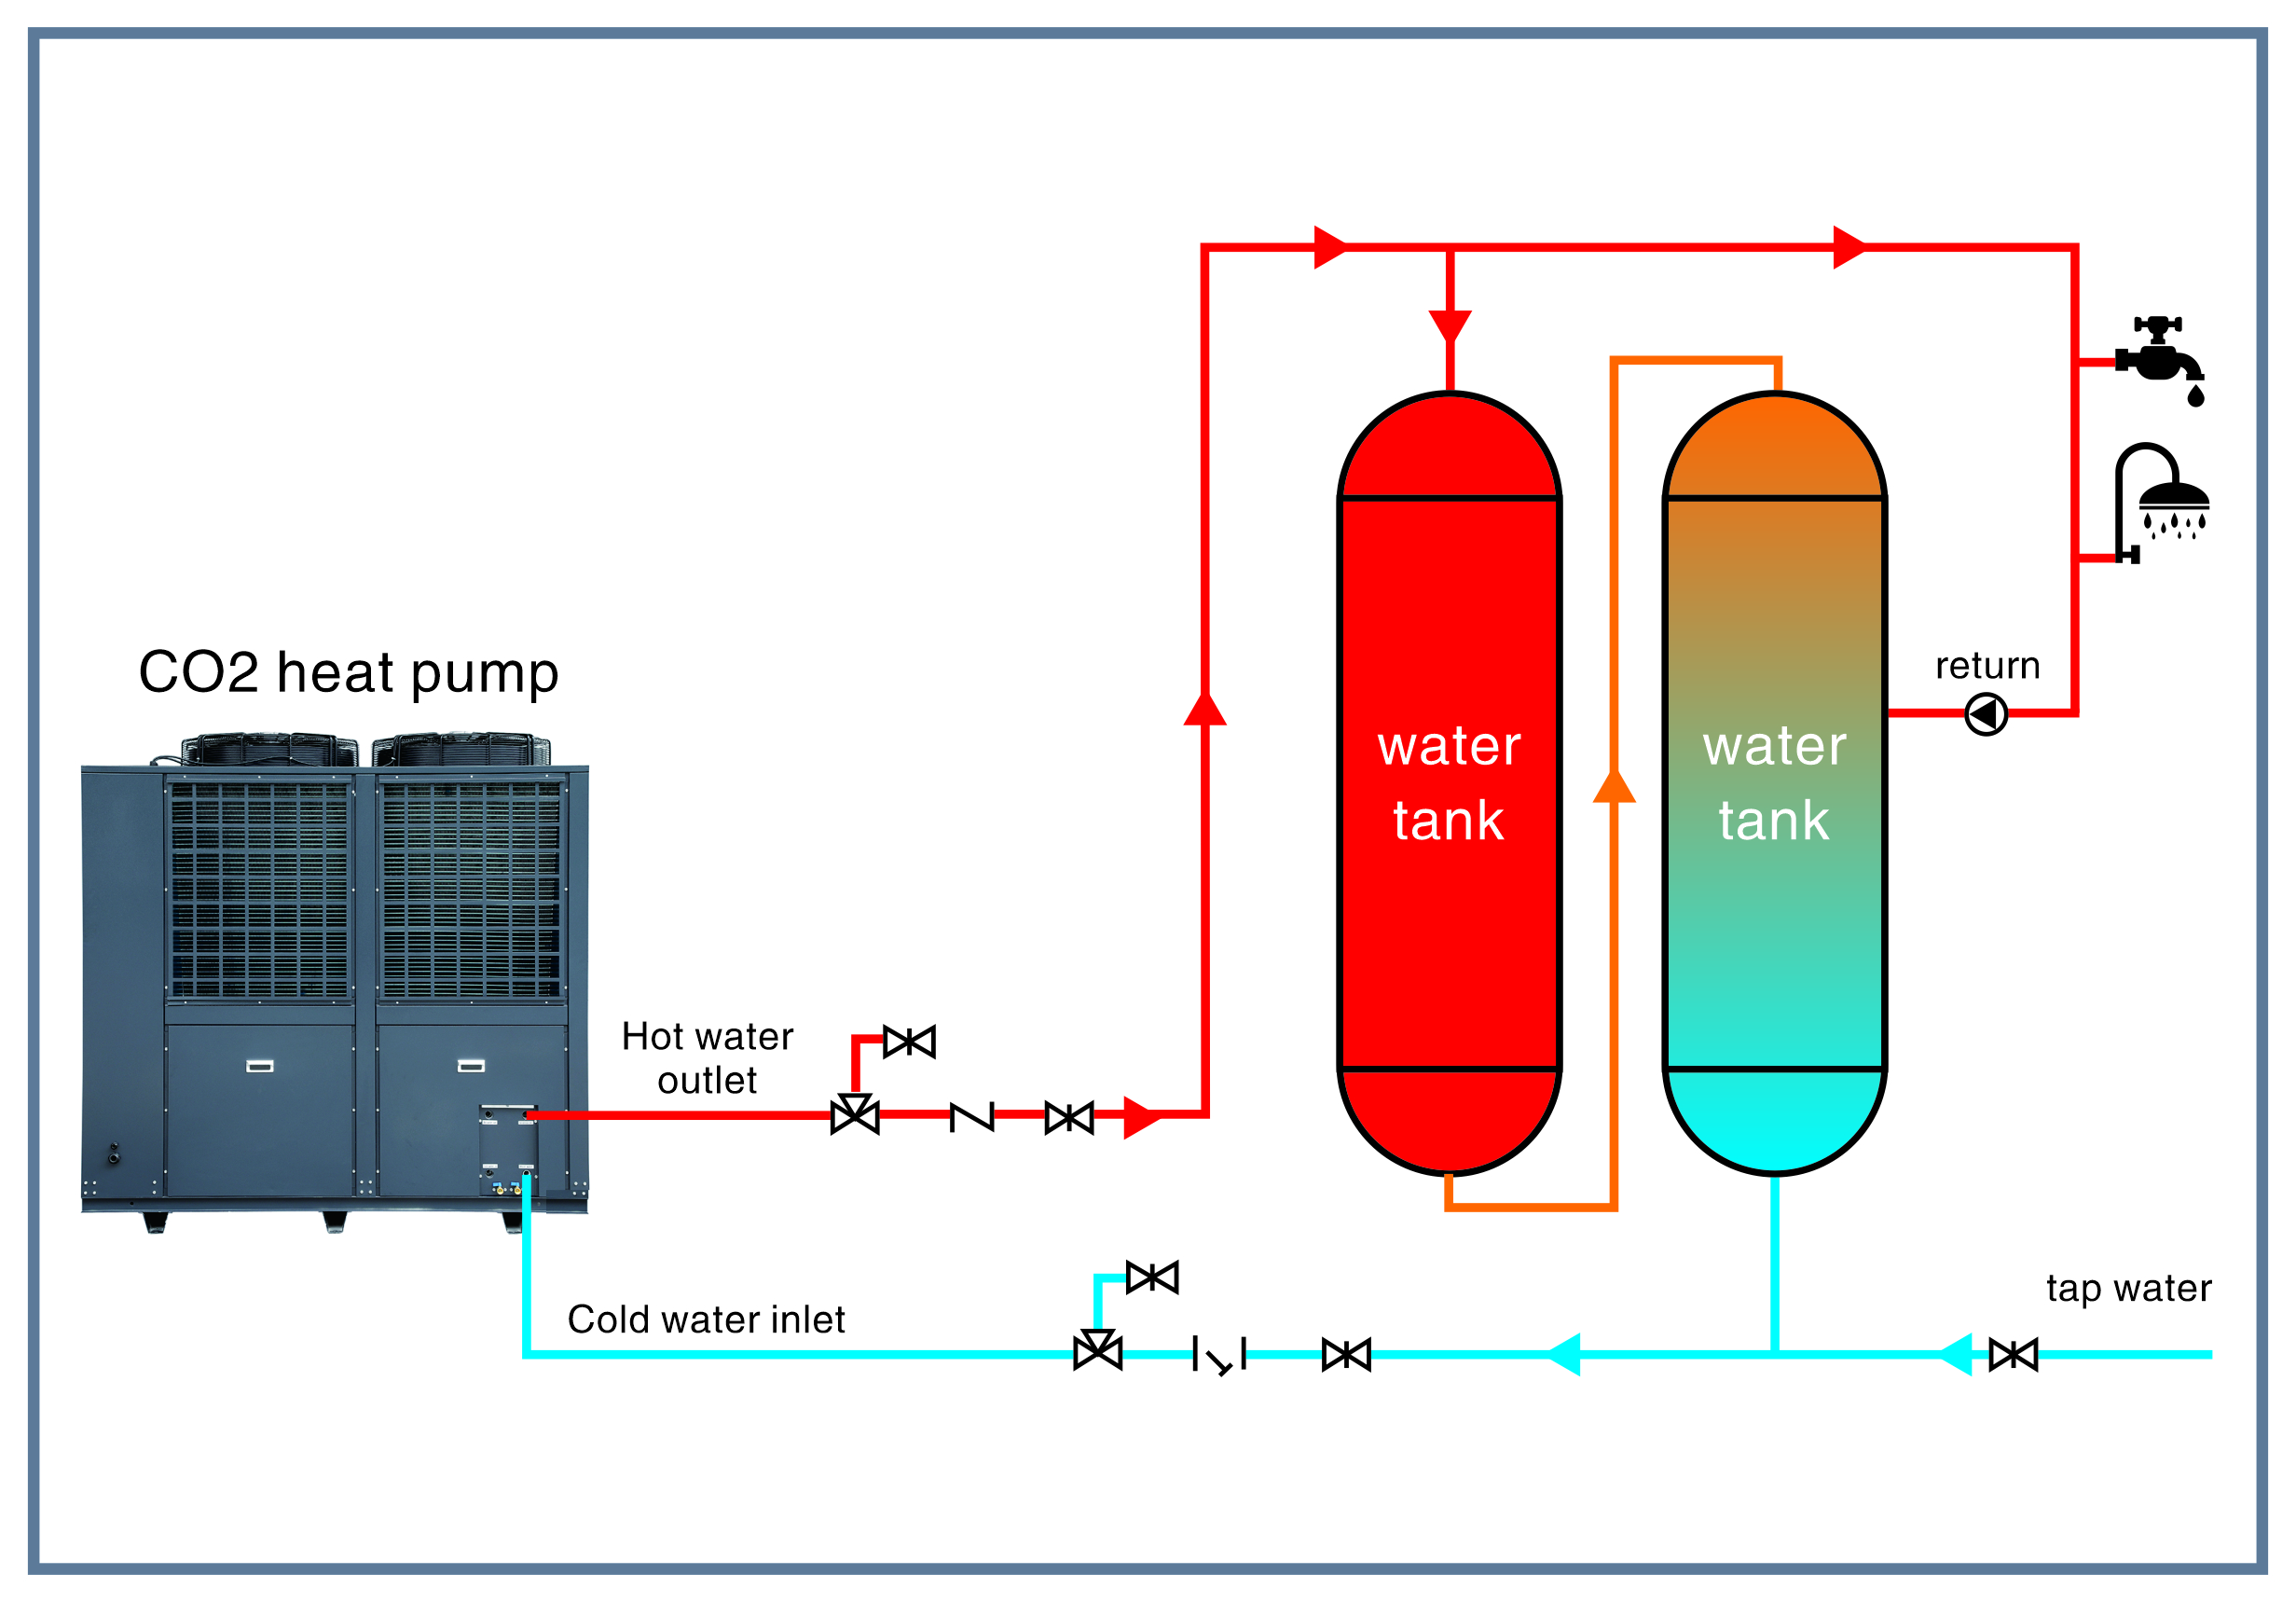 Pompe à chaleur air/eau CO2 pour chauffe-eau